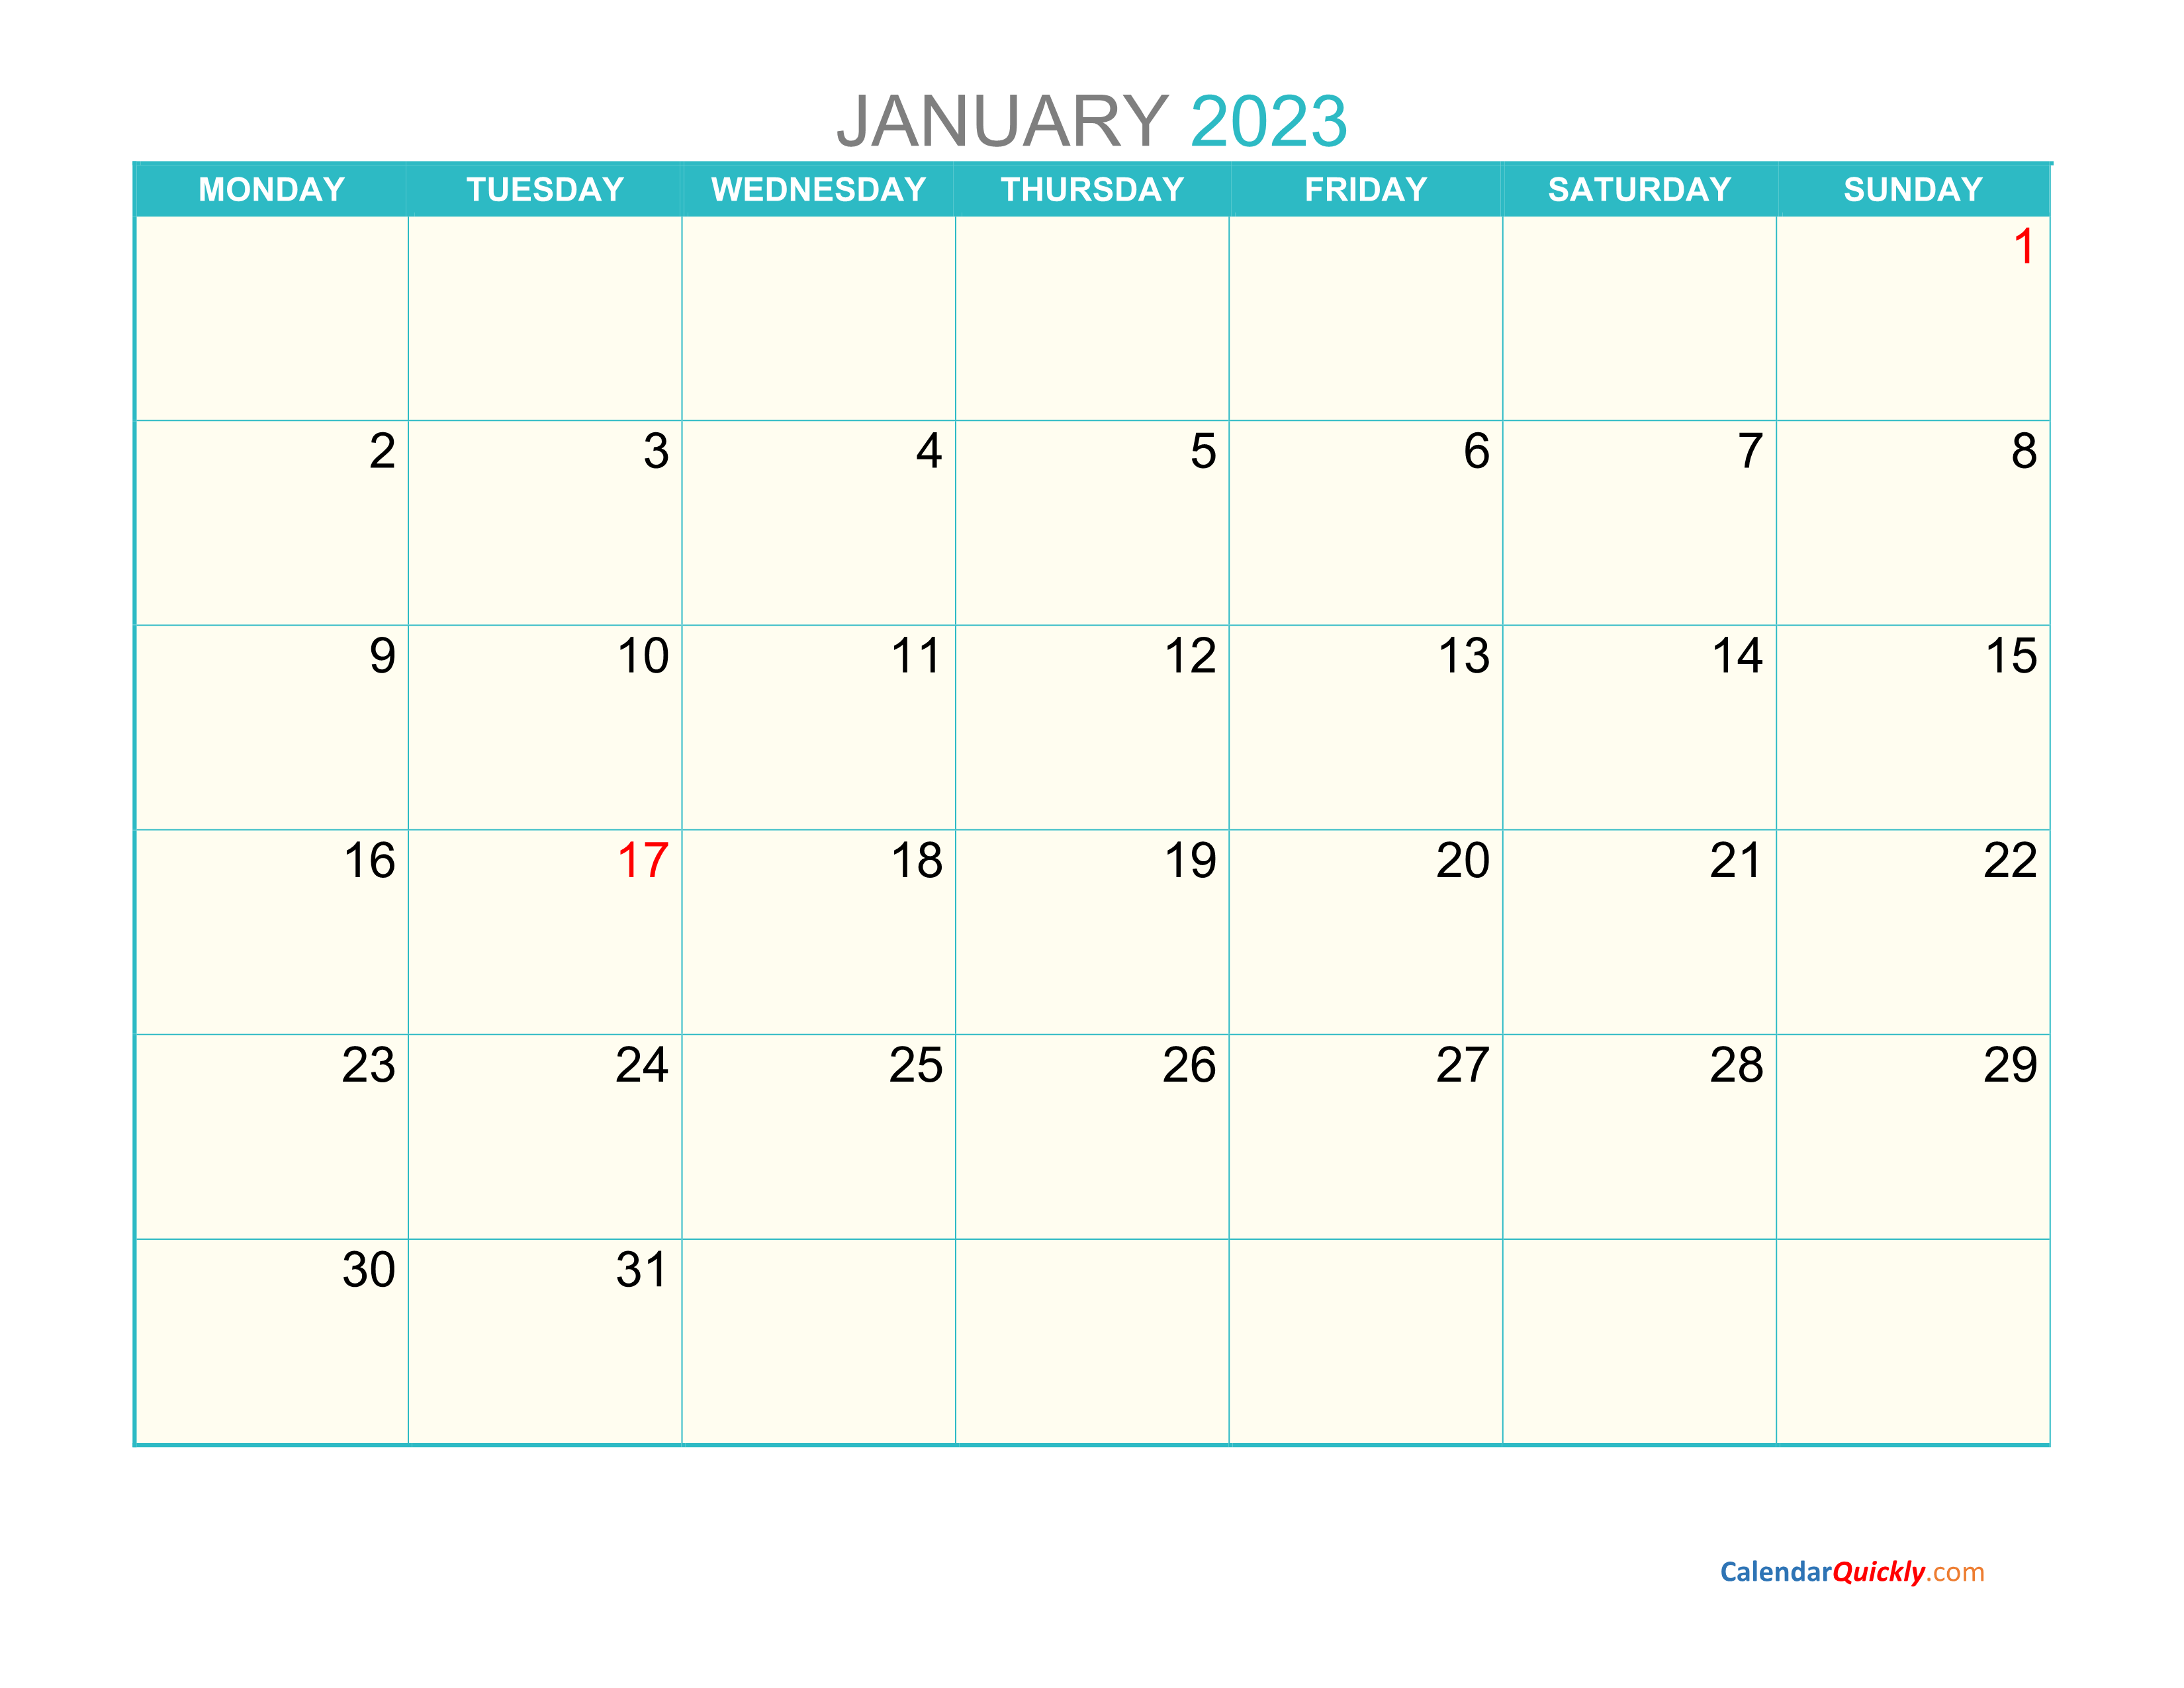 Monthly Monday 2023 Calendar Printable Calendar Quickly